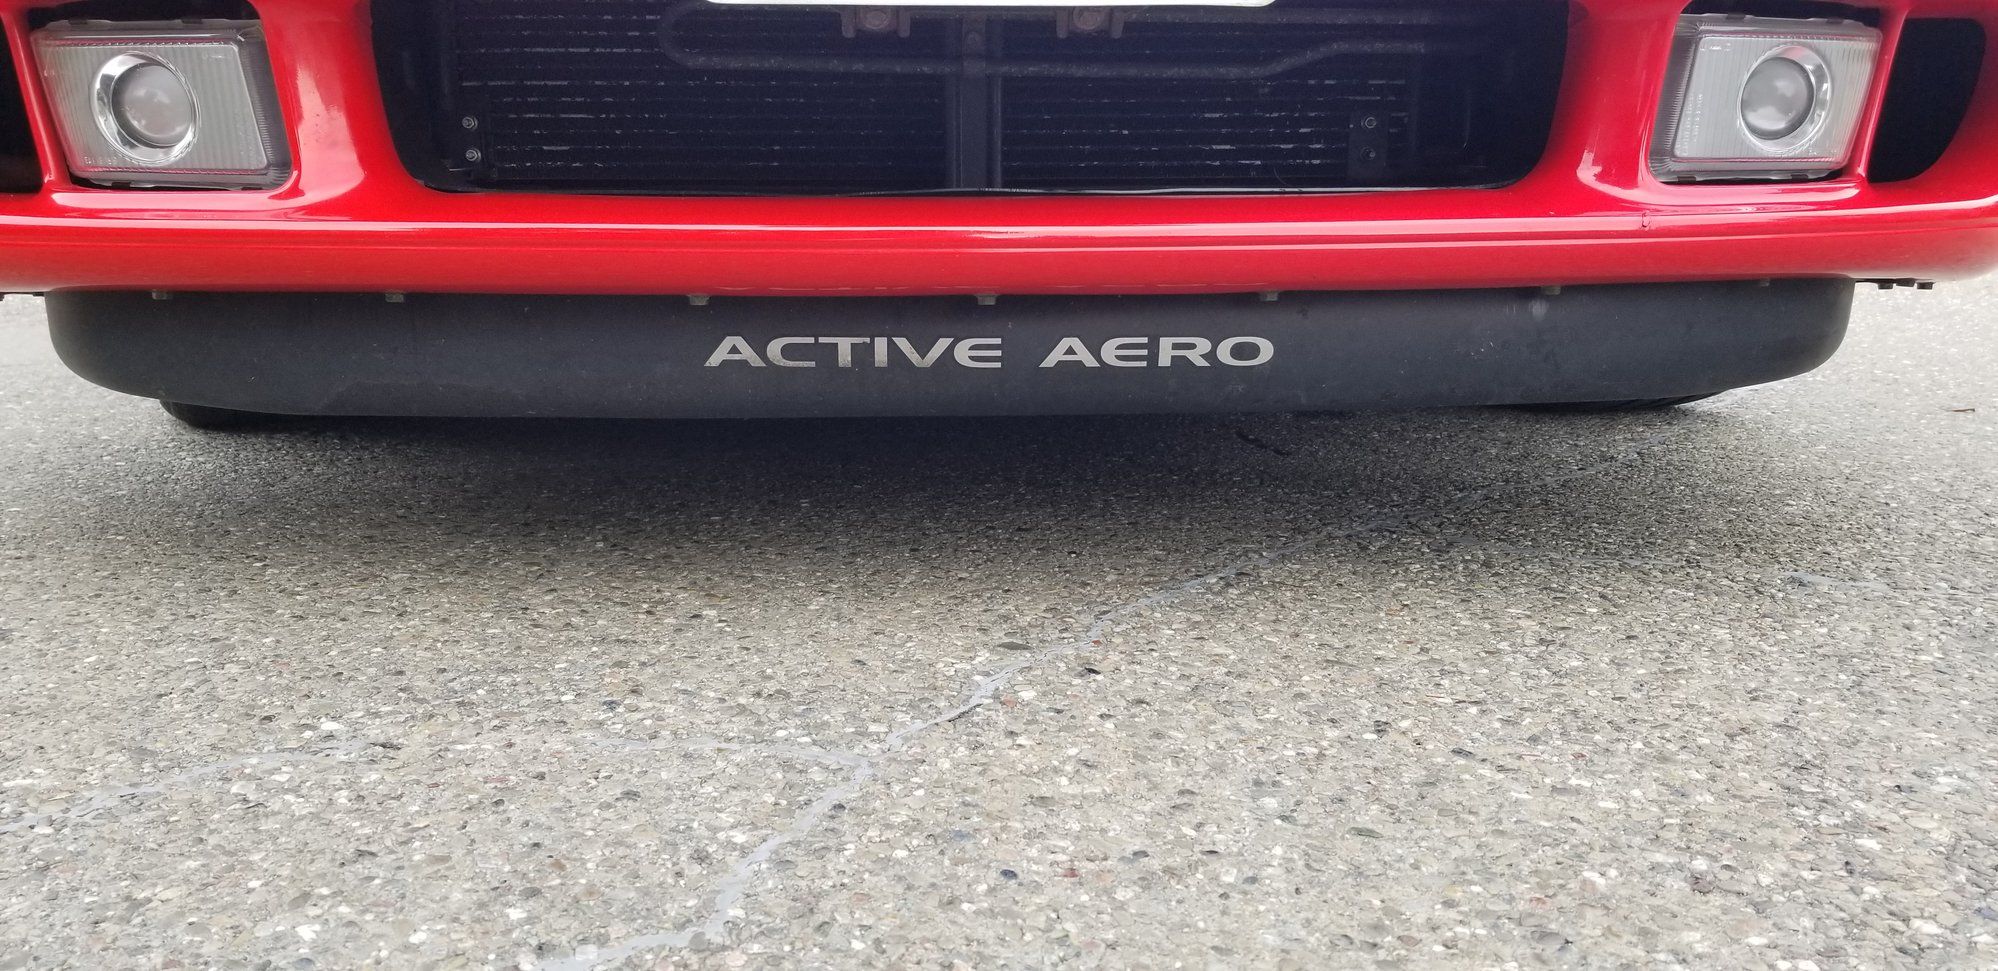 active aero